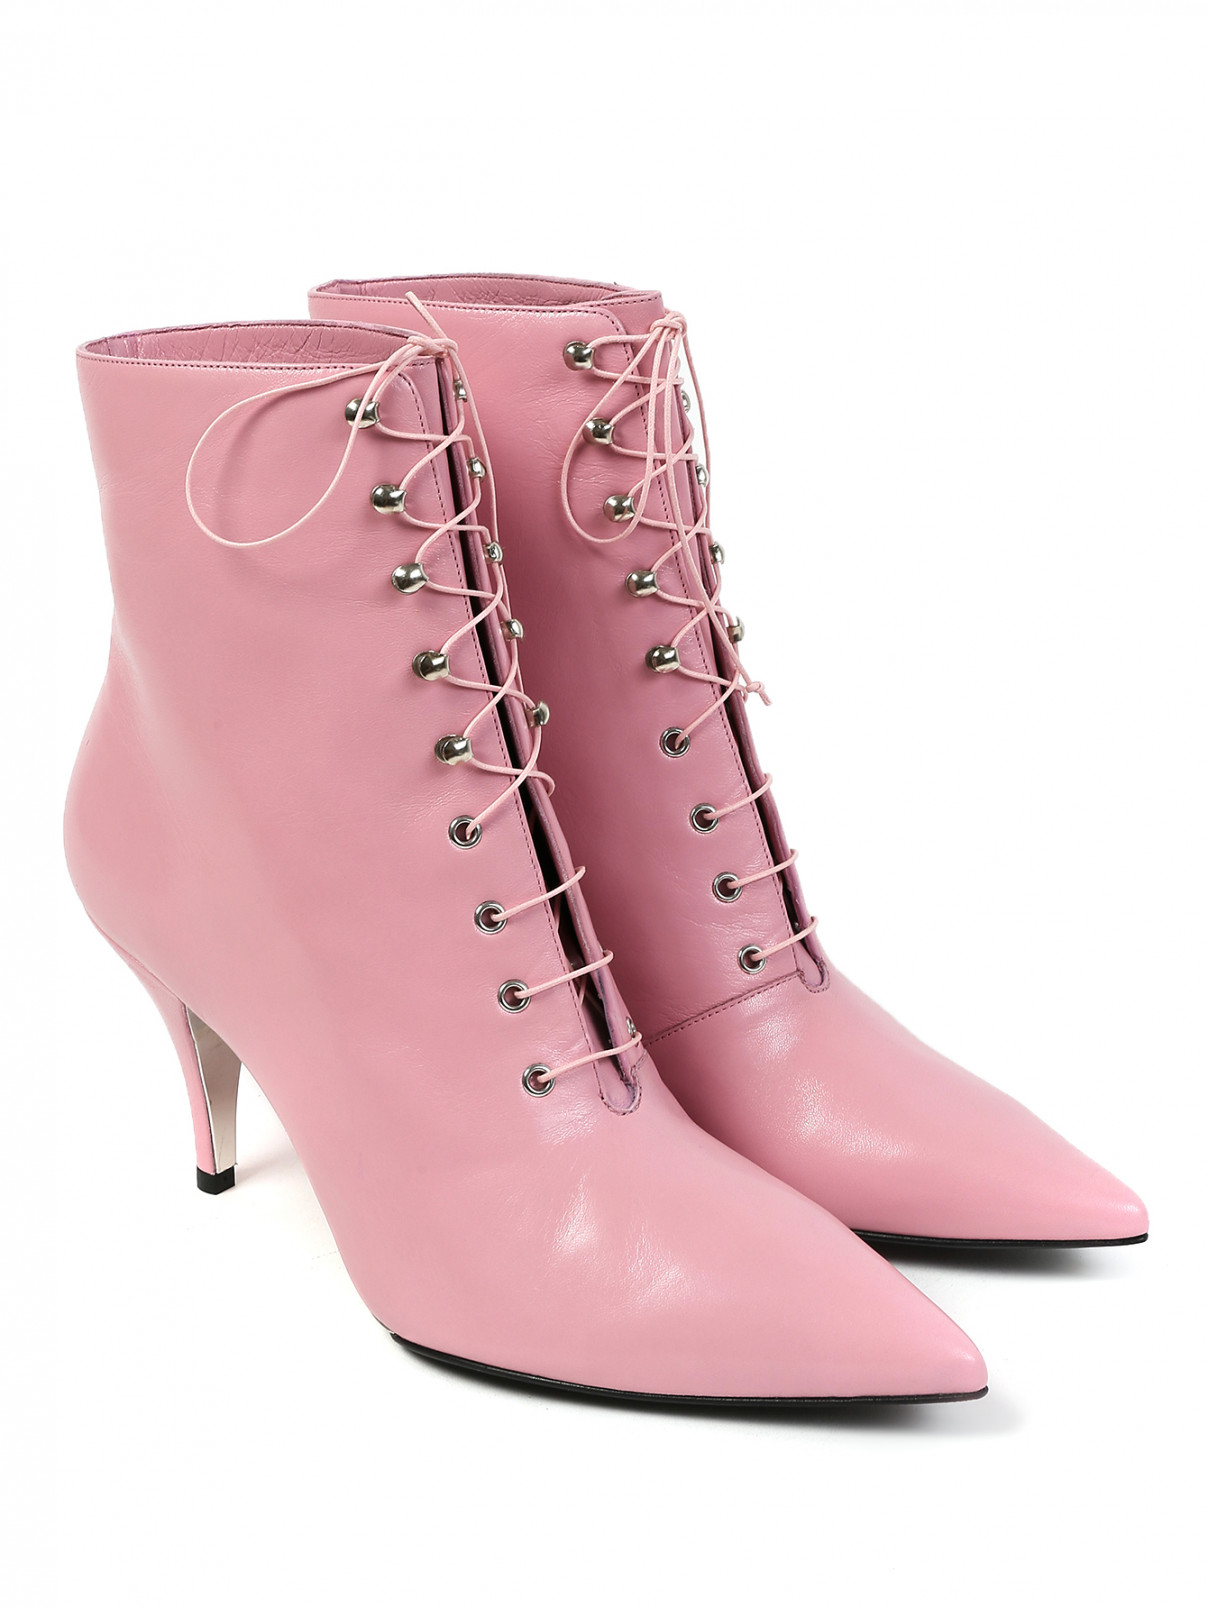 Ботильоны из кожи Calvin Klein 205W39NYC  –  Общий вид  – Цвет:  Розовый